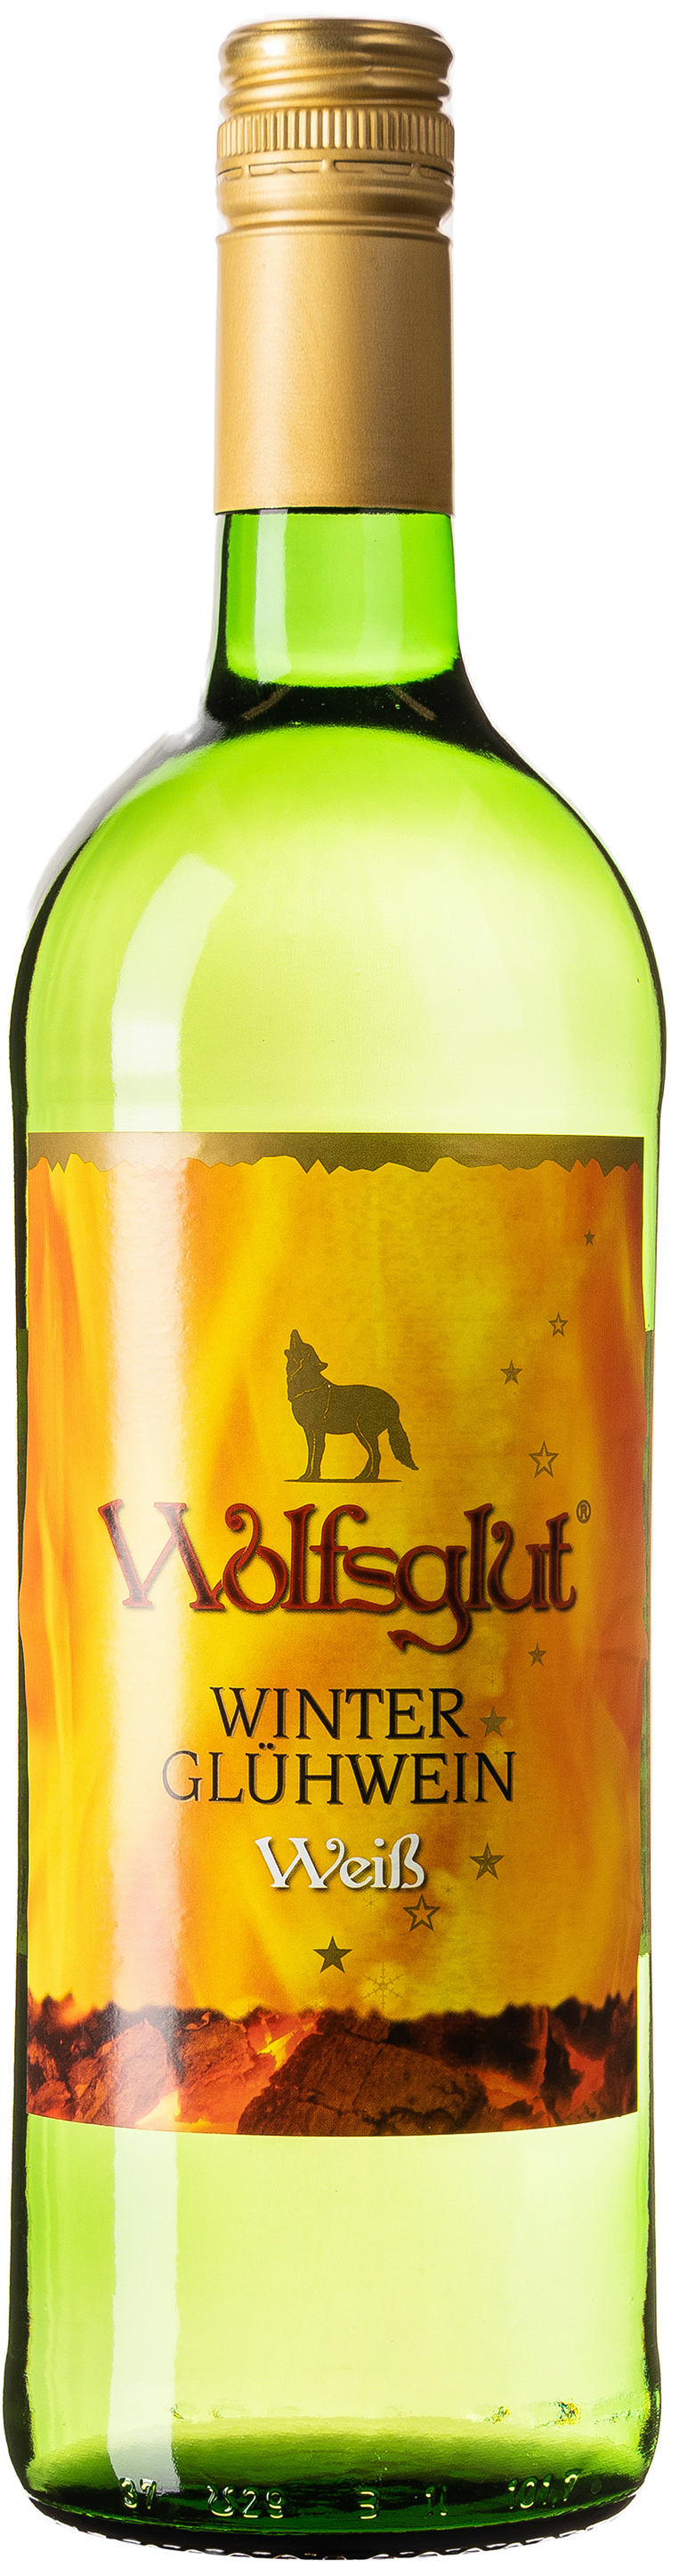 Wolfsglut Winzerglühwein Weiss 10,6% vol. 1,0L